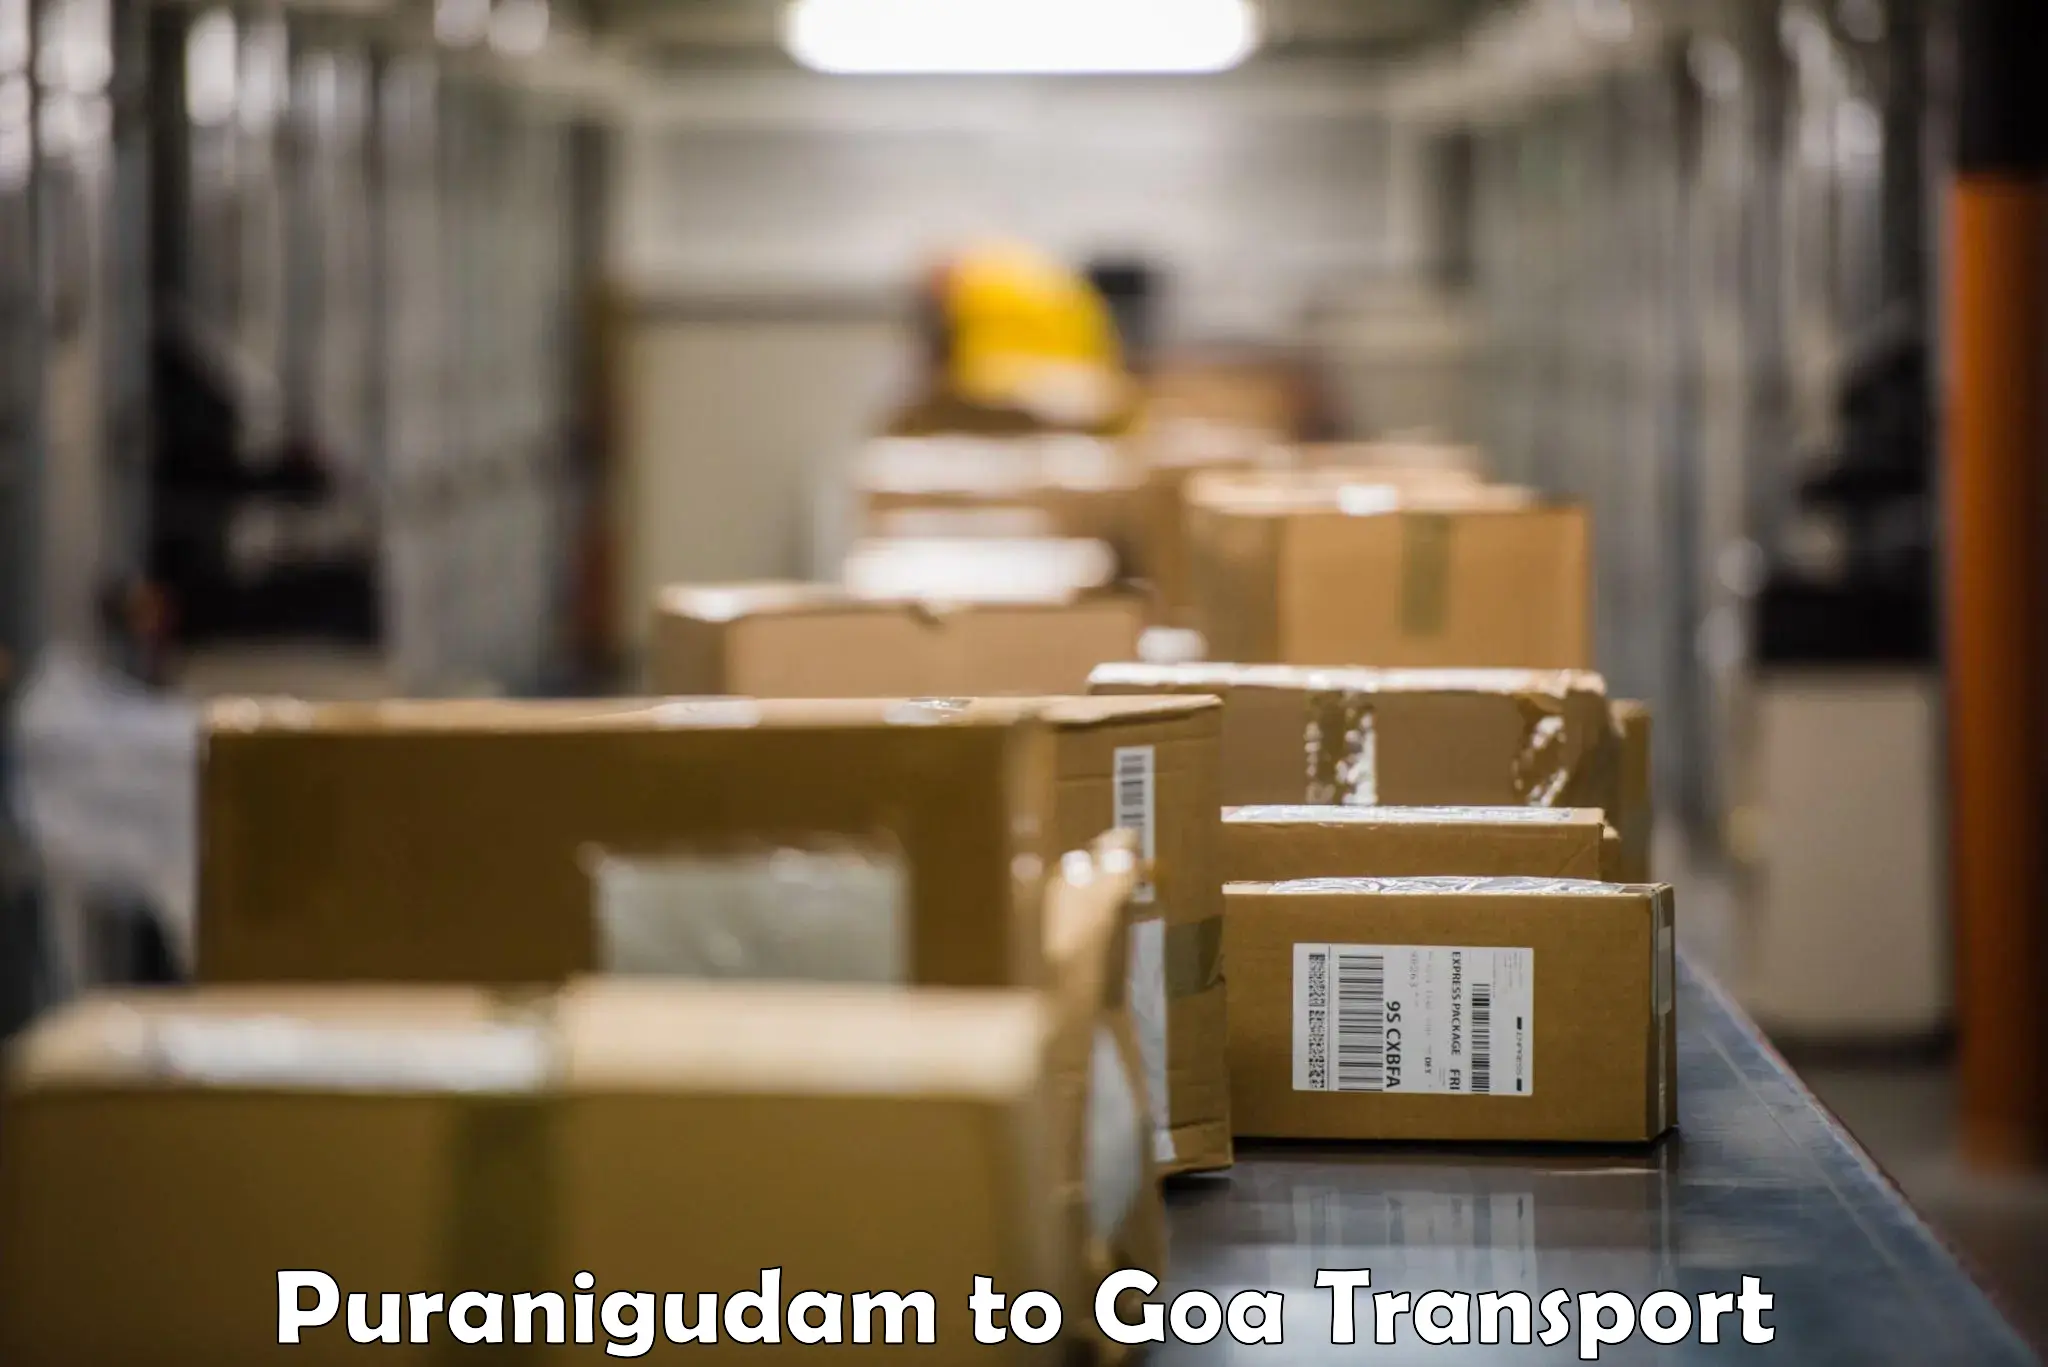 Lorry transport service Puranigudam to Panjim